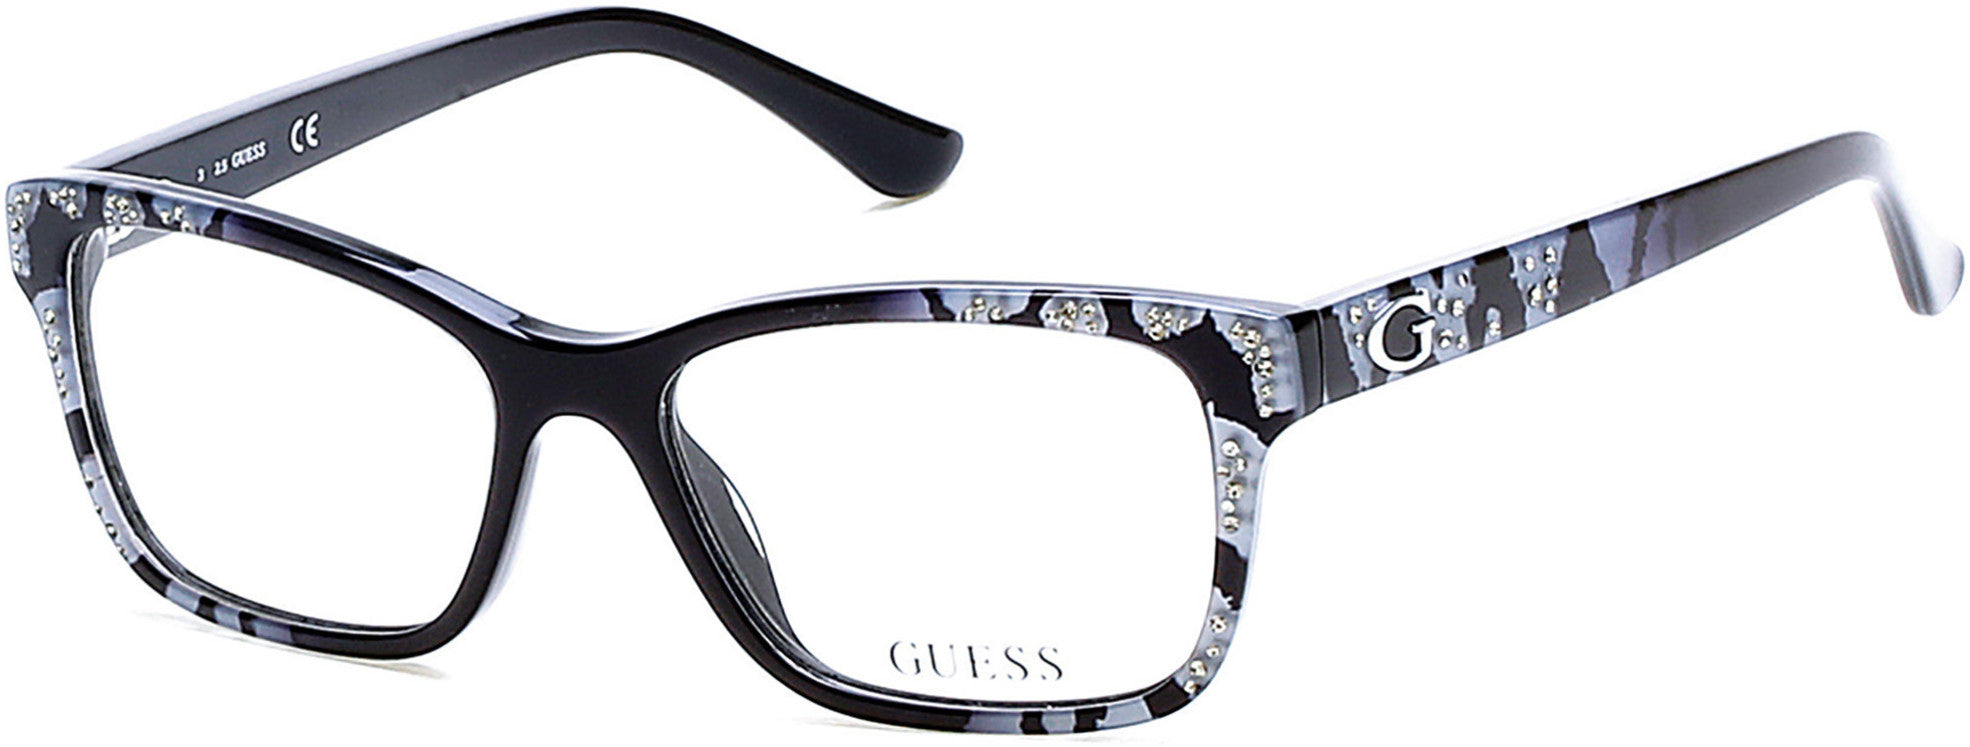 Guess GU2553 Geometric Eyeglasses 001-001 - Shiny Black